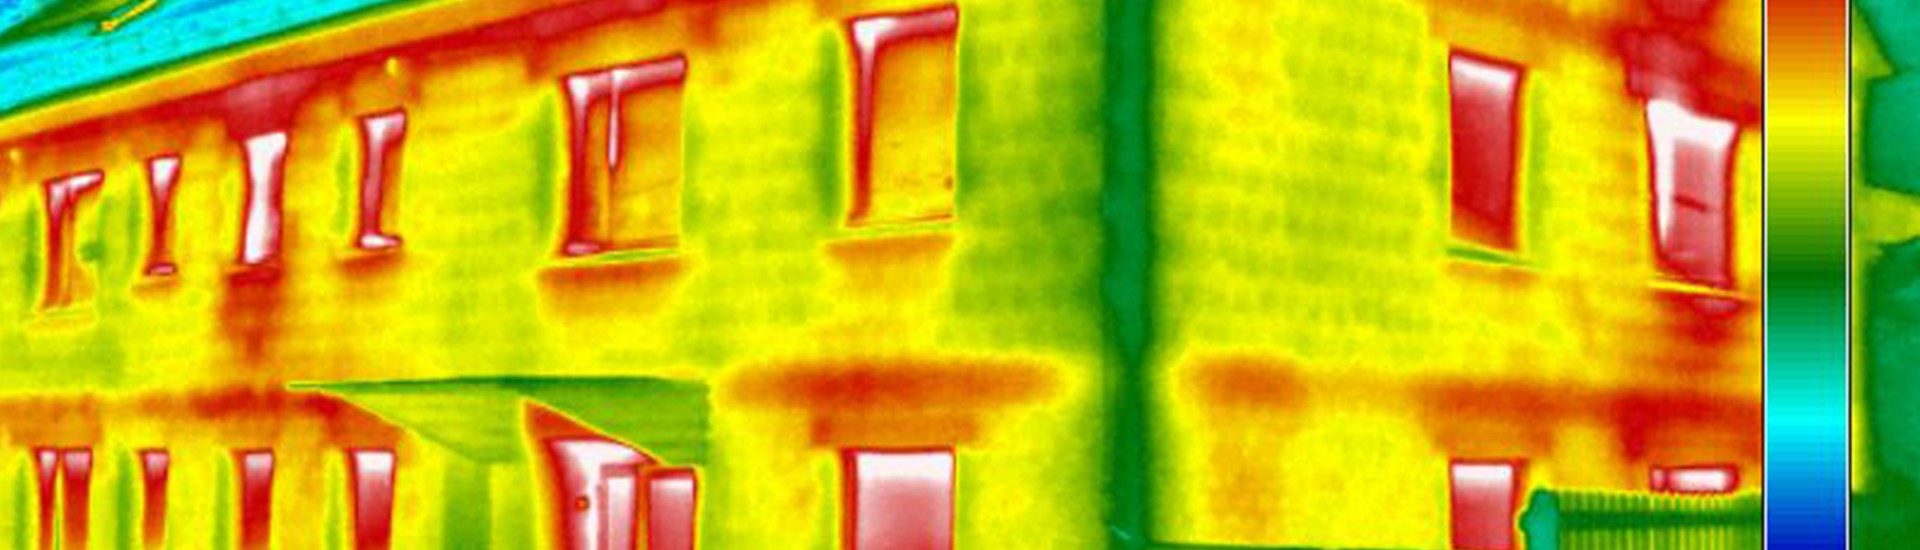 Infrarot-Thermografie Bild von einem Haus